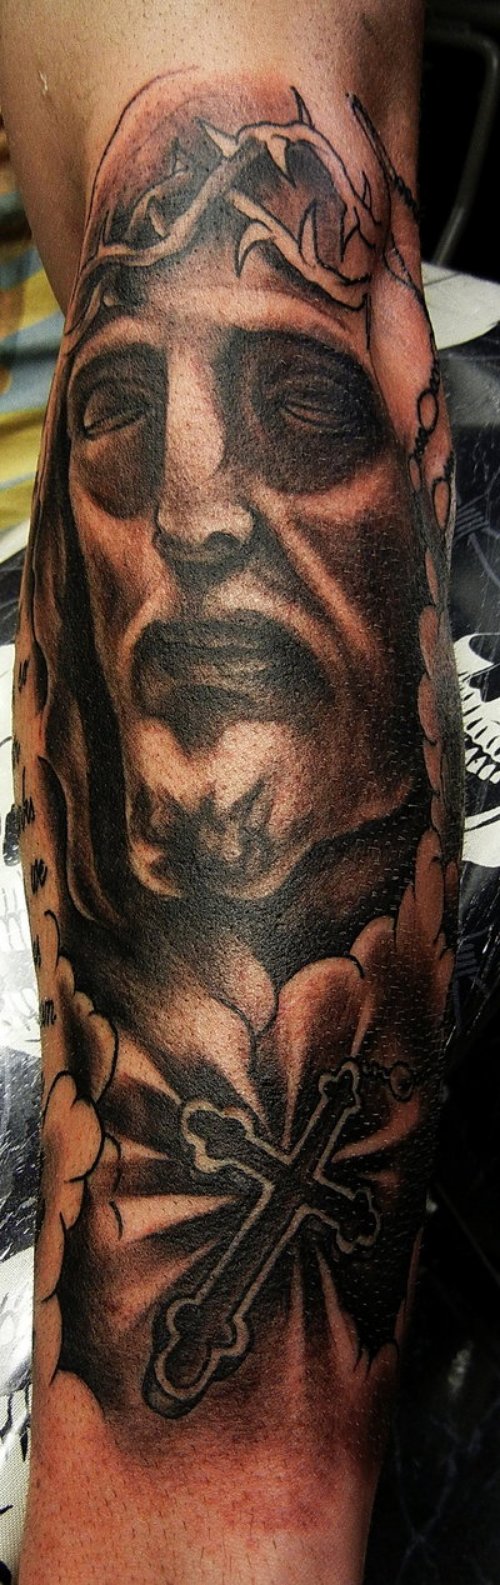 Black Cross And Jesus Head Tattoo On Arm